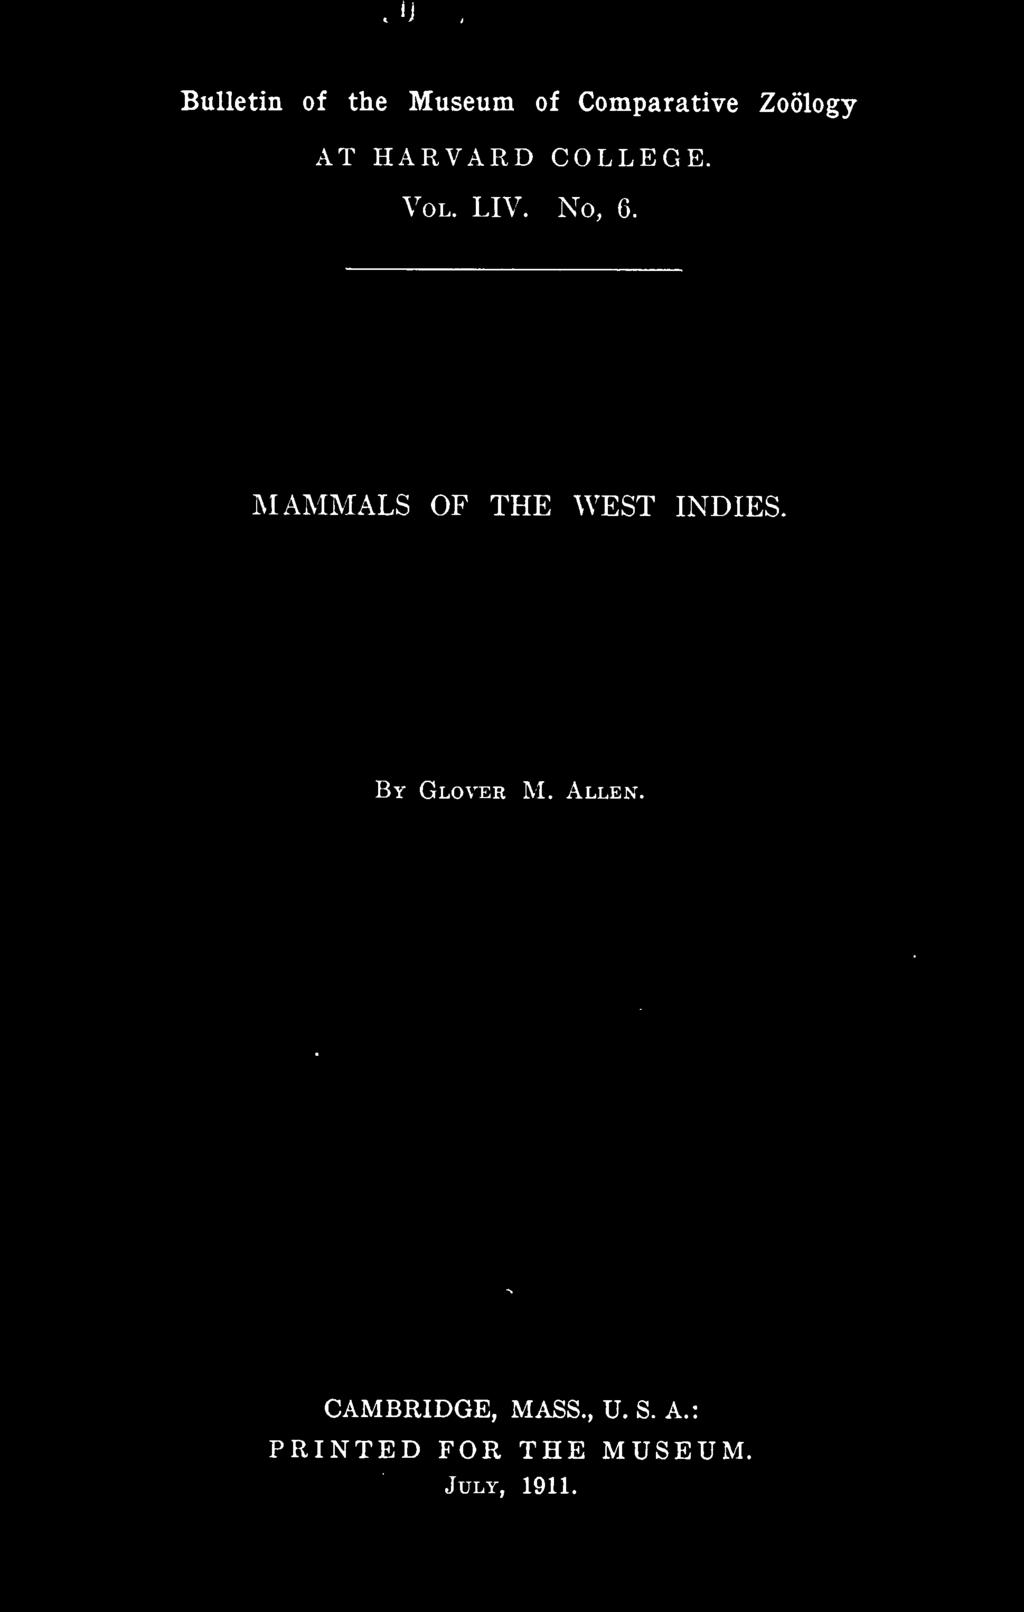 MAMMALS OF THE WEST INDIES. By Glover M. Allen.